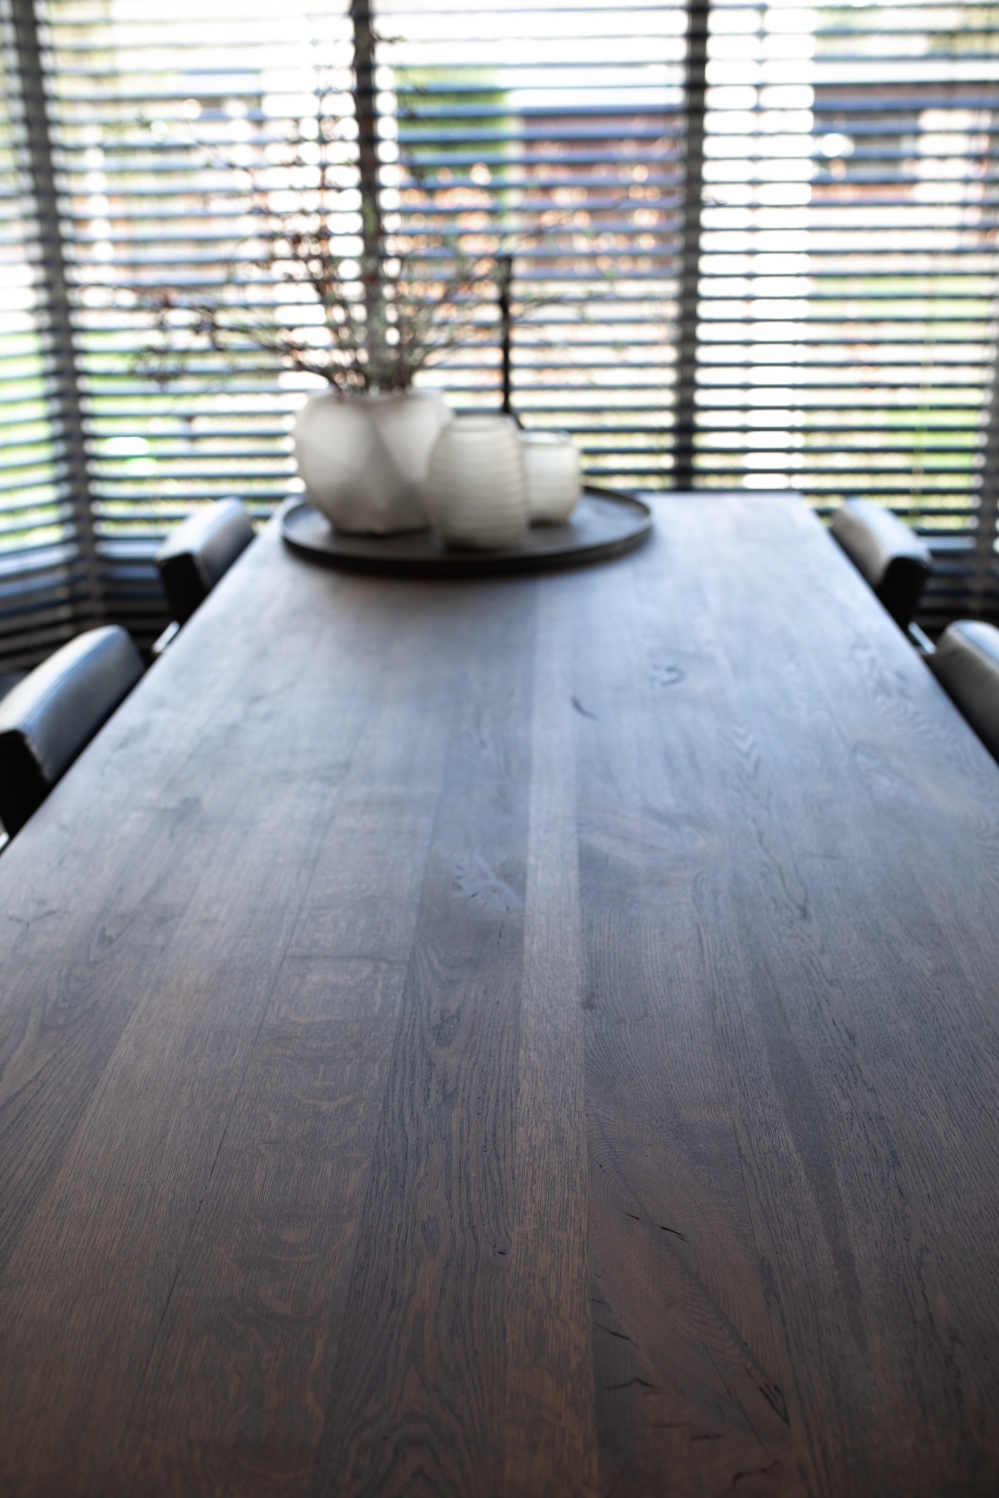 Maaike-Hombroek-Houten-Vloeren-meubels-op-maat-eiken-houten-eettafel-afgewerkt-in-donkere-olie